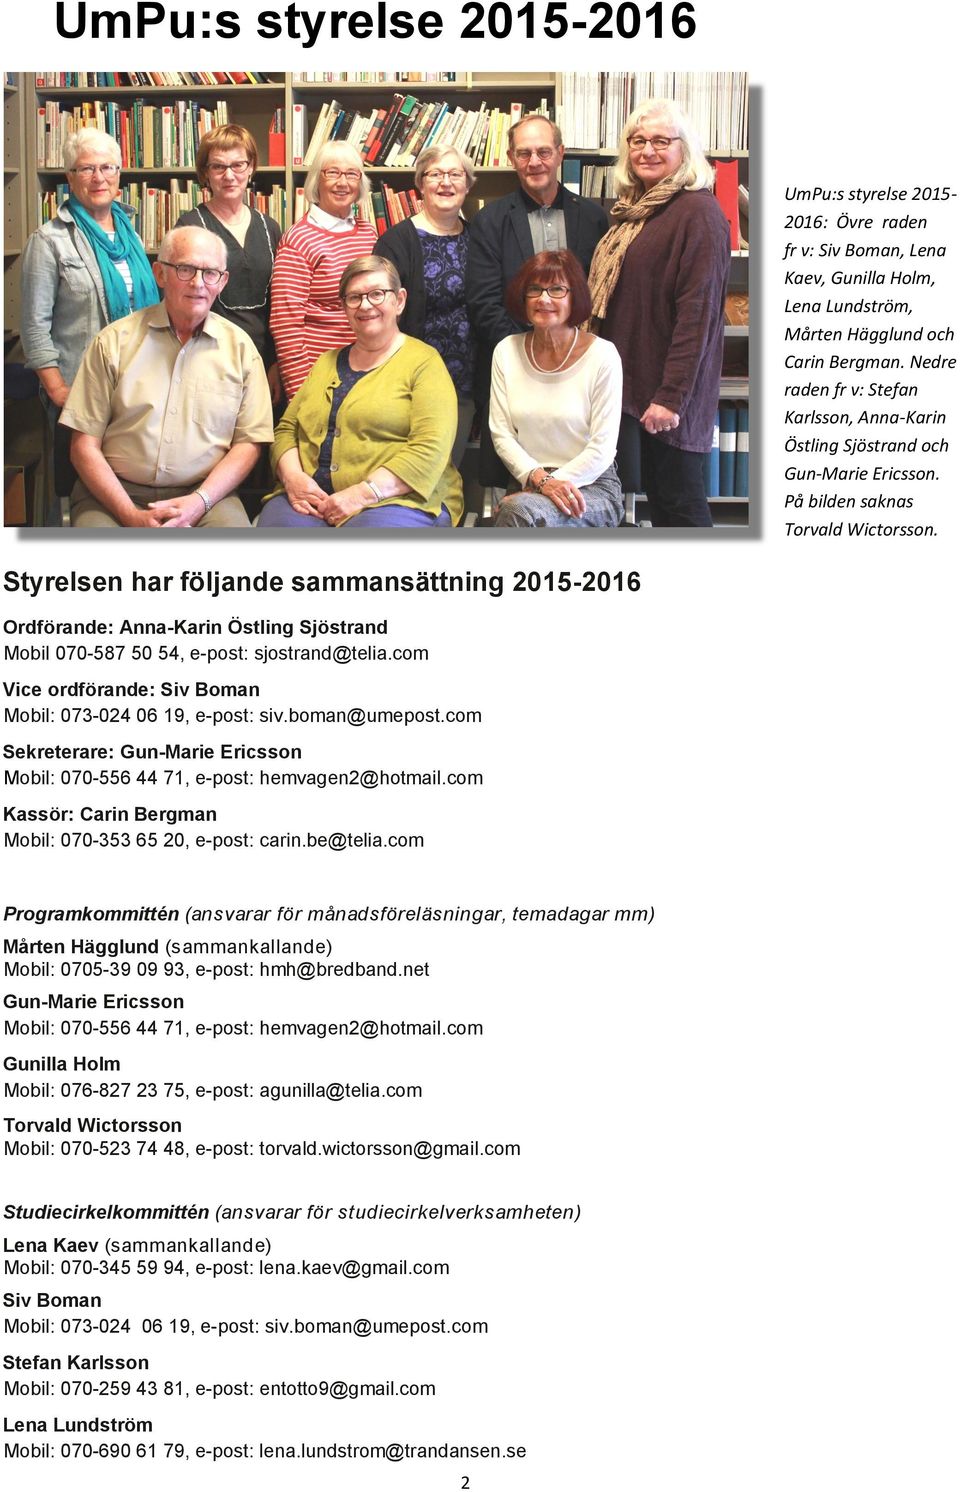 Styrelsen har följande sammansättning 2015-2016 Ordförande: Anna-Karin Östling Sjöstrand Mobil 070-587 50 54, e-post: sjostrand@telia.com Vice ordförande: Siv Boman Mobil: 073-024 06 19, e-post: siv.